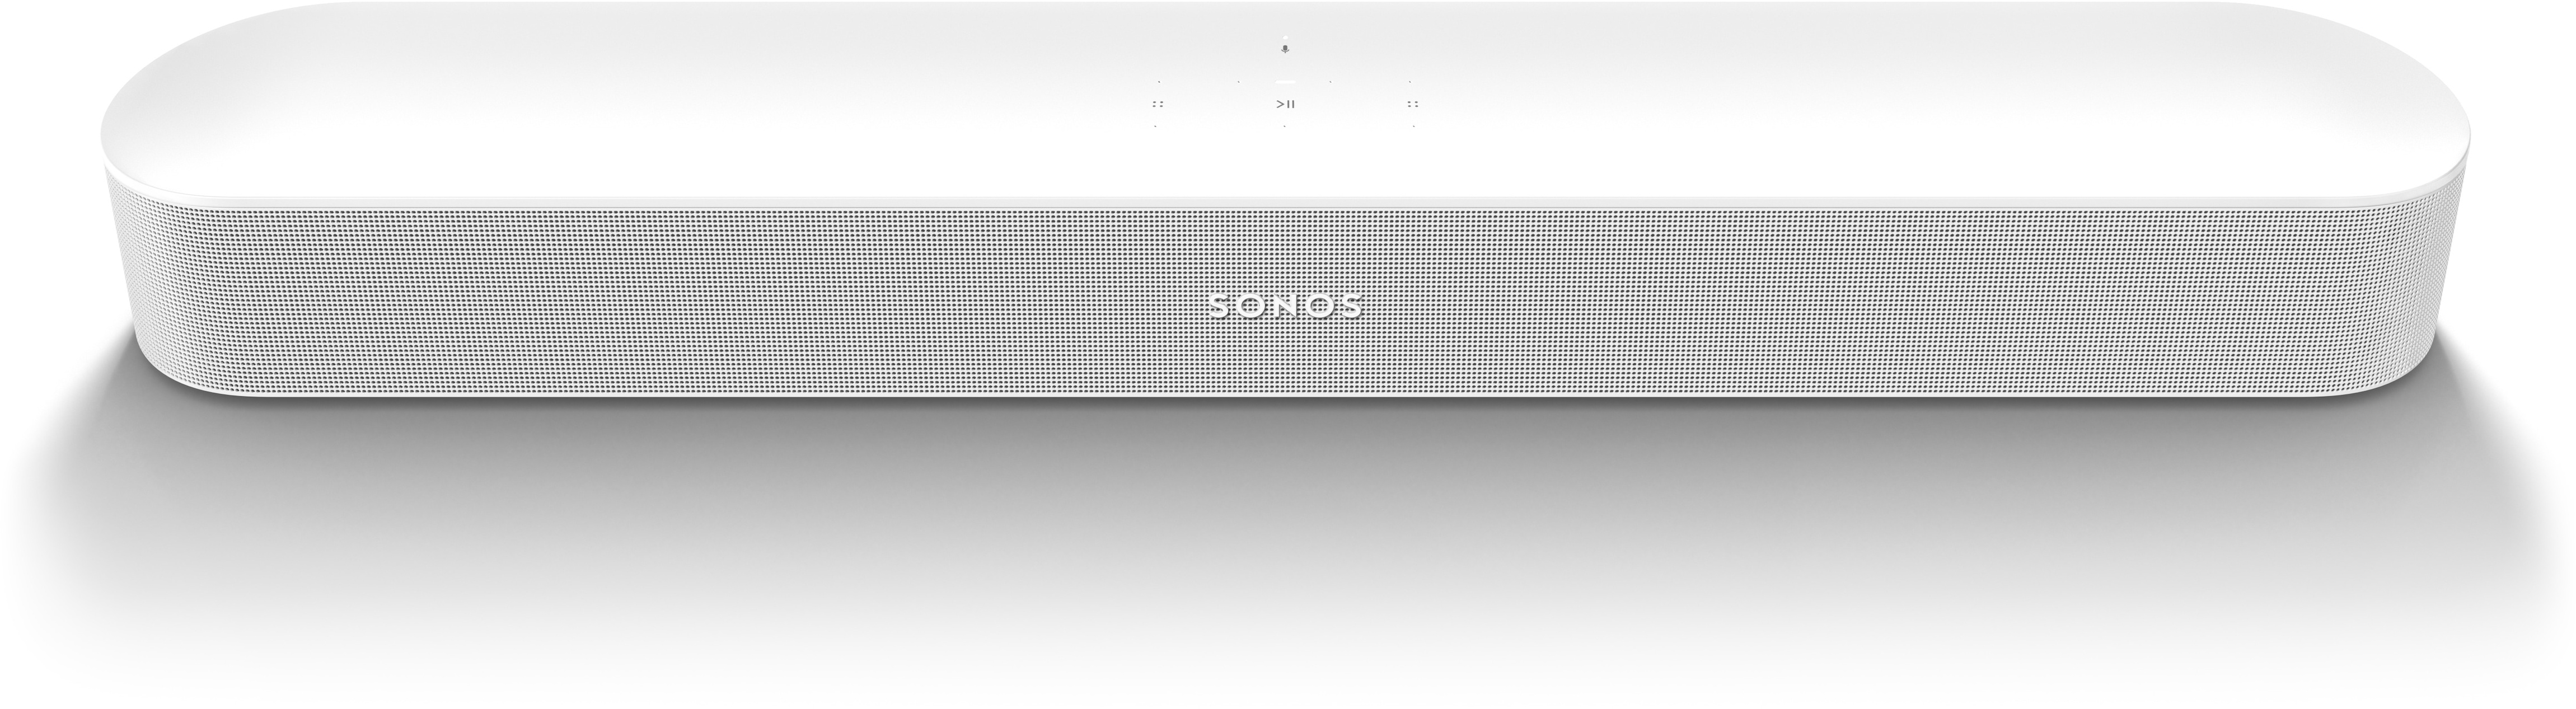 Sonos Beam Gen 2 (WLAN, Airplay 2), Multiroom System, Weiss